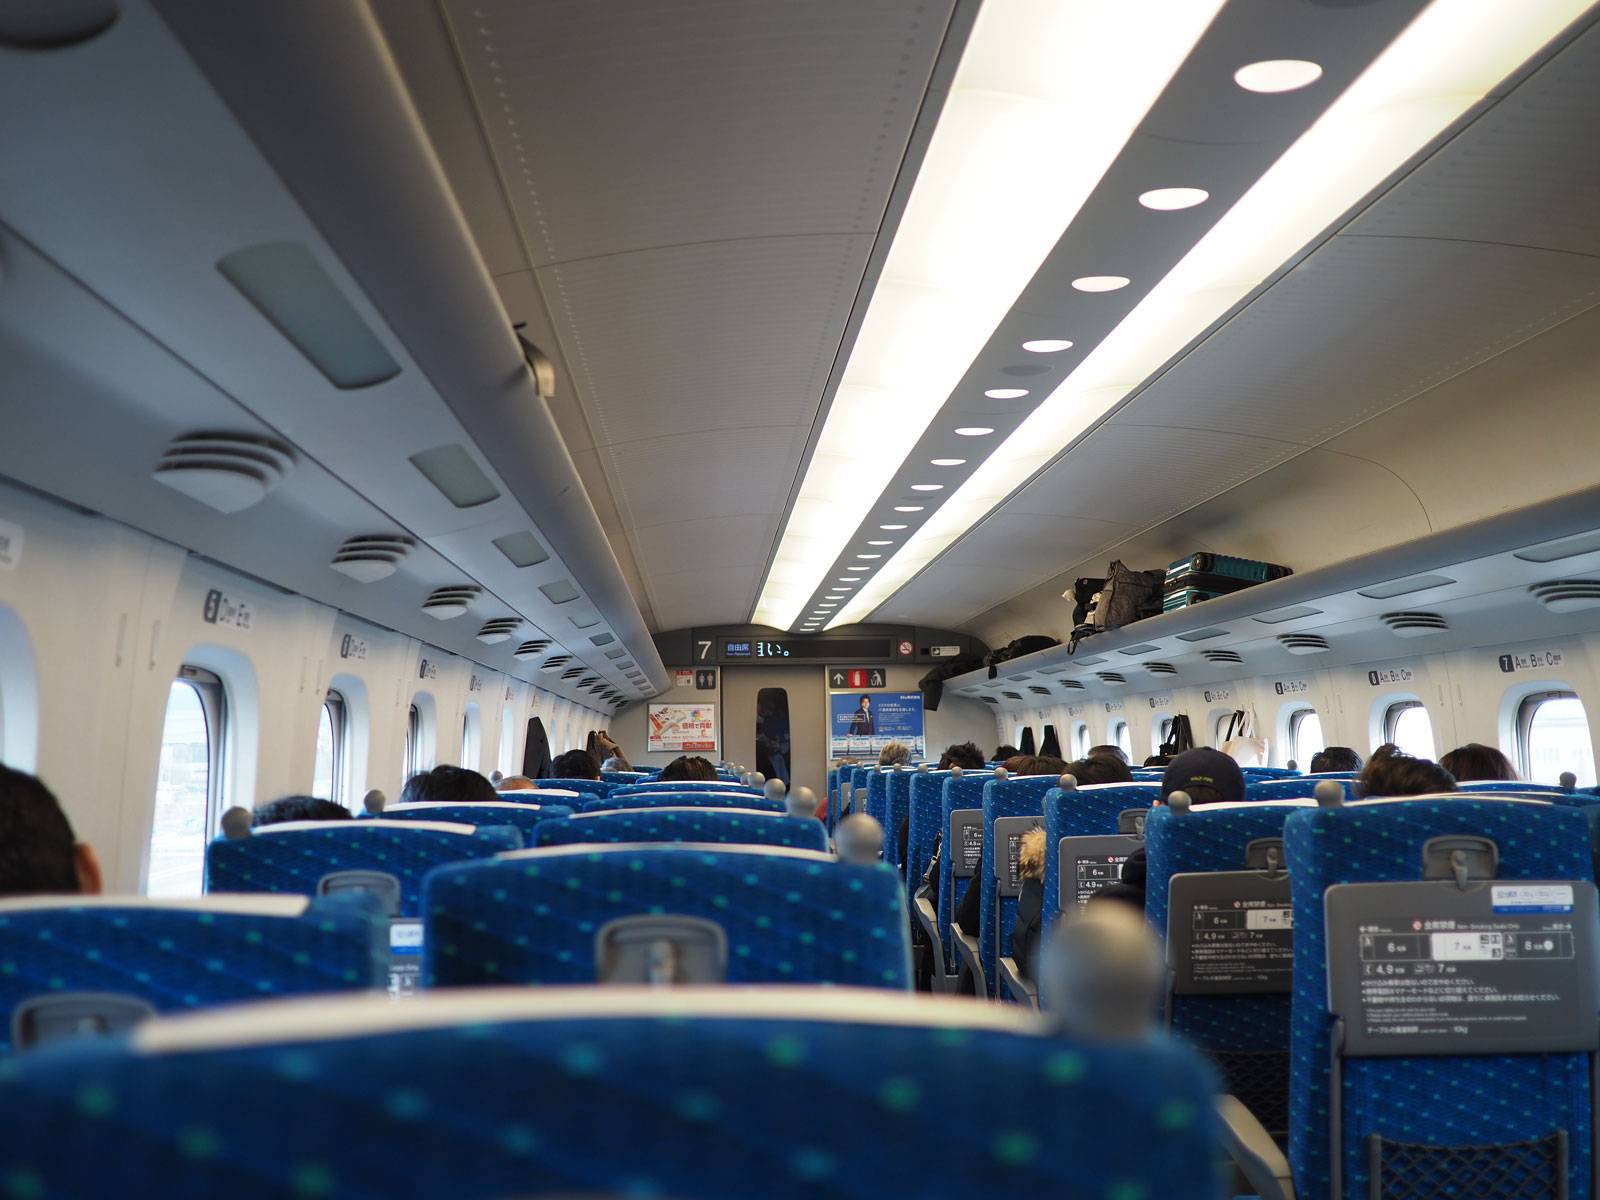 Inside the Shinkansen train car